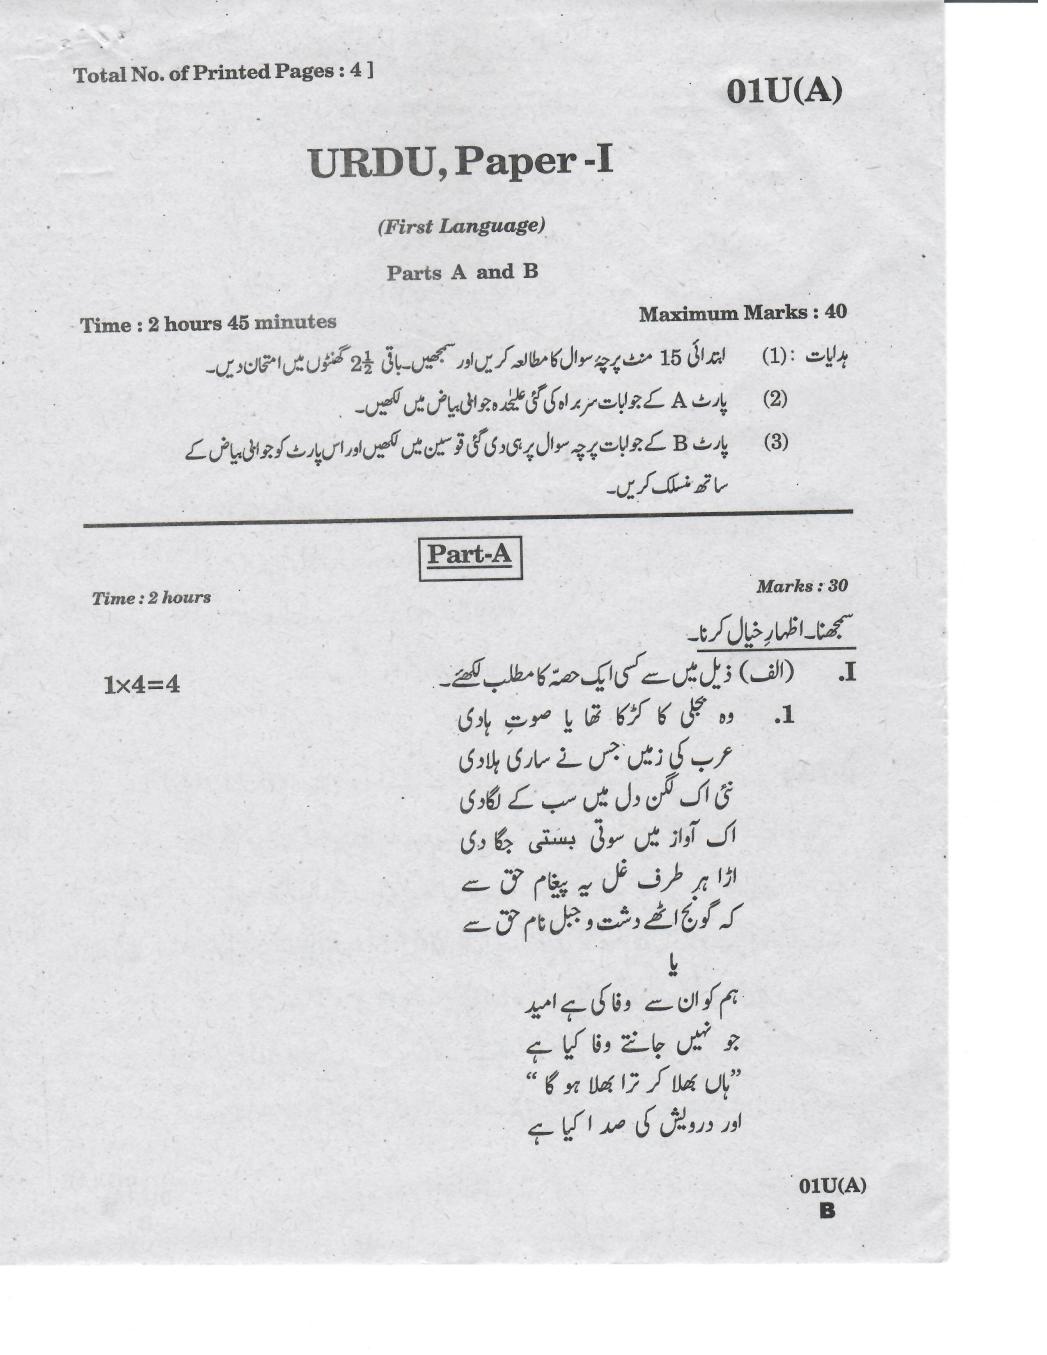 AP 10th Class Question Paper 2019 Urdu - Paper 1 (1st Language) - Page 1